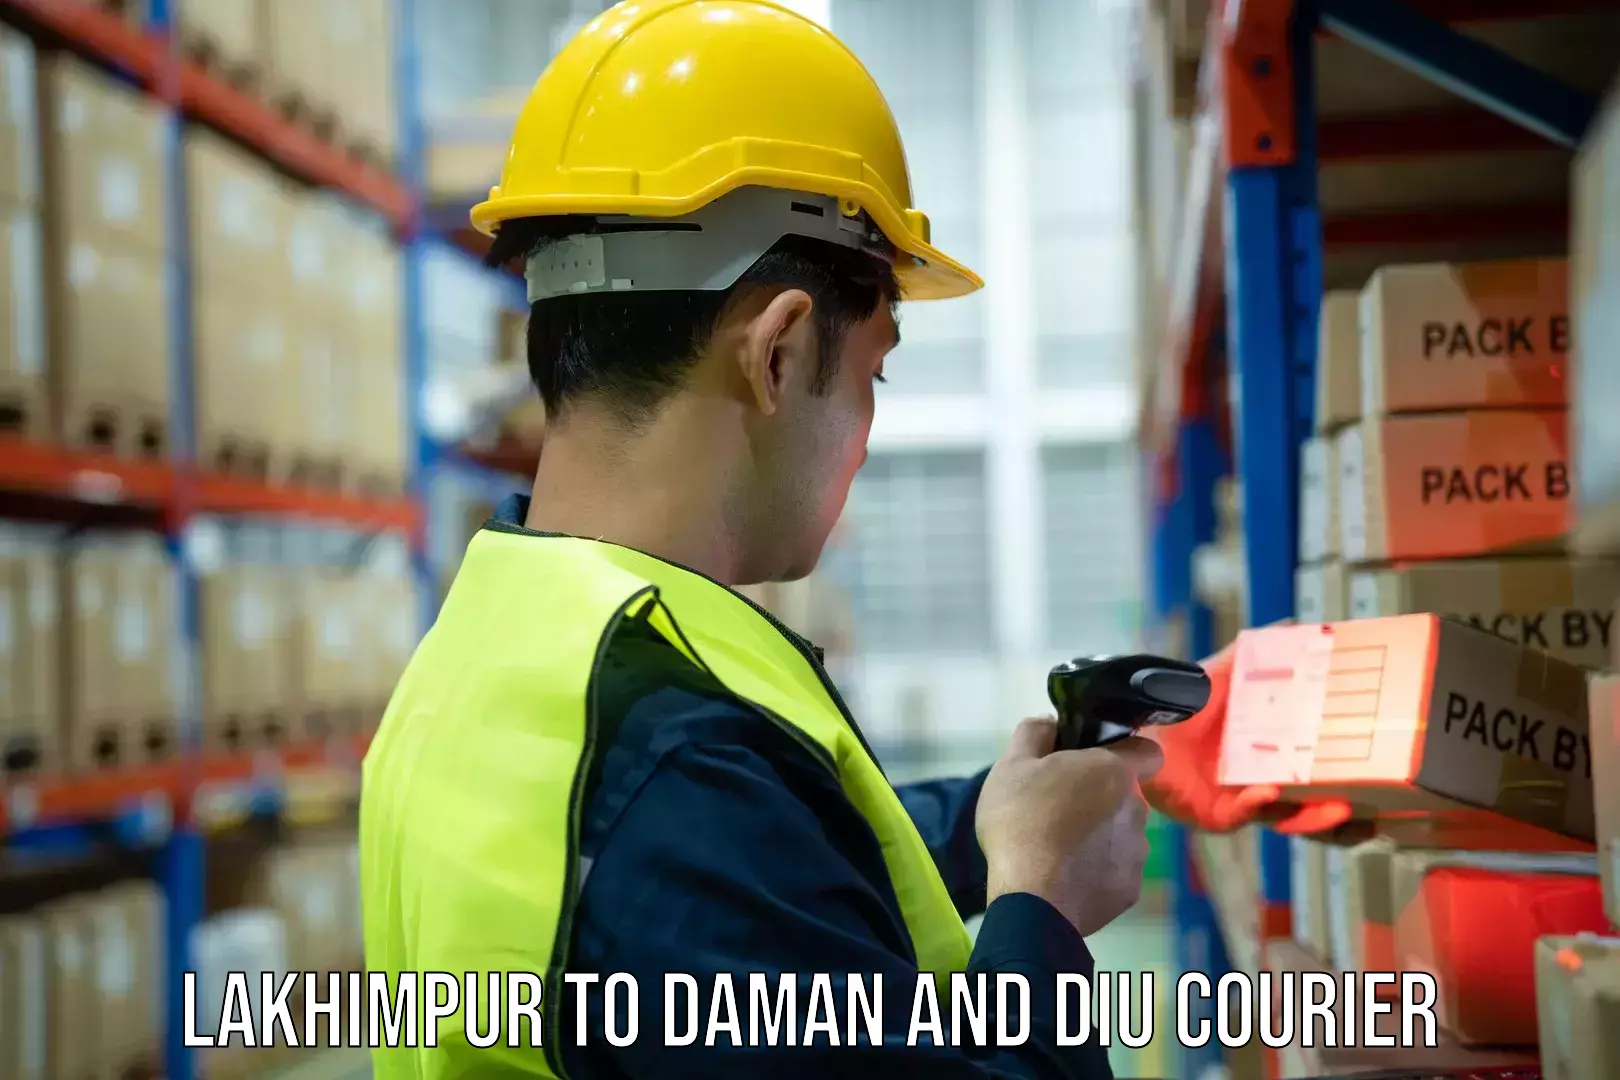 Courier service comparison Lakhimpur to Diu